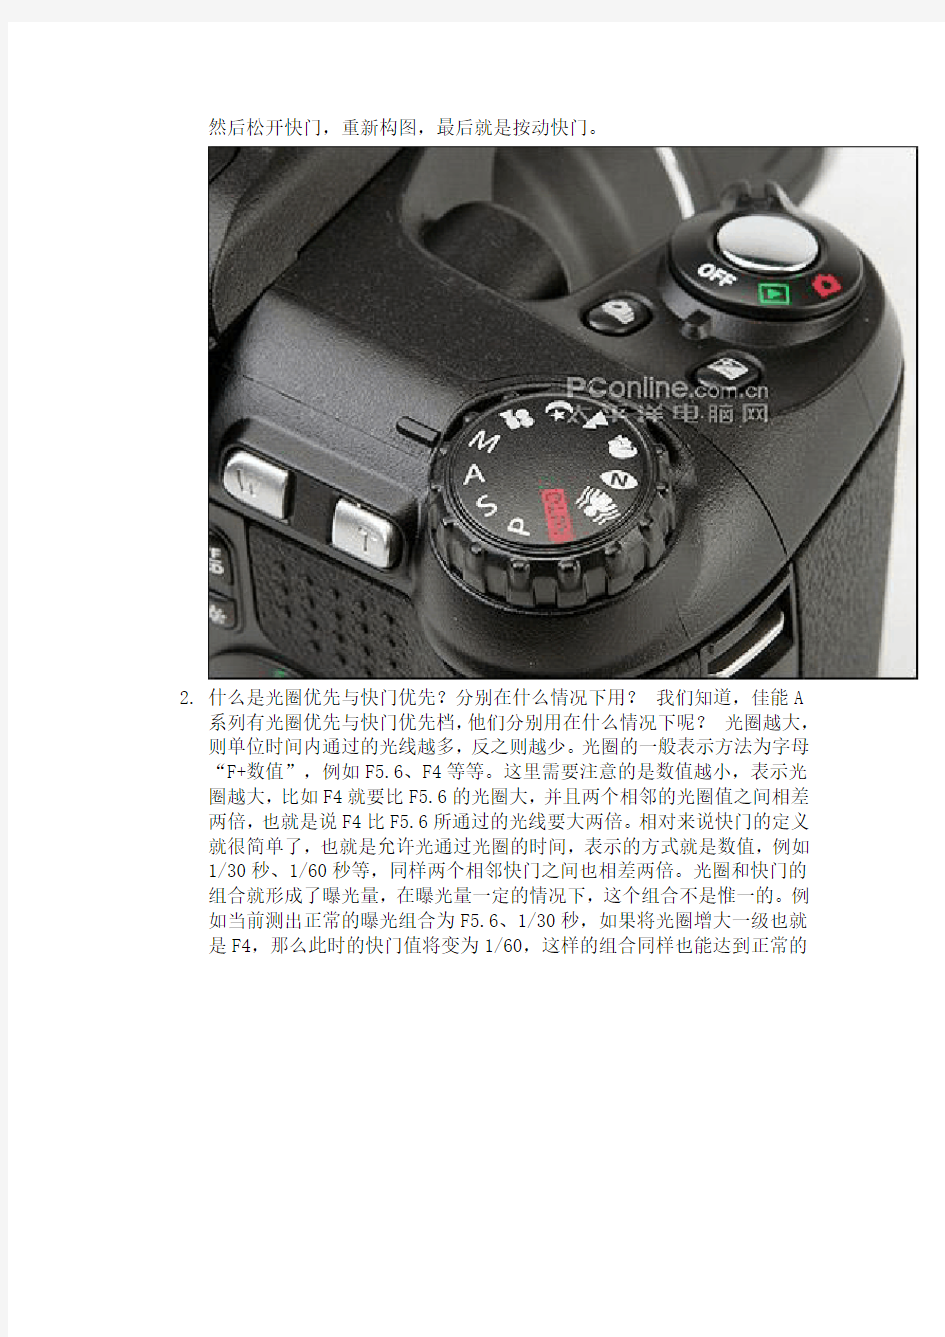 富士数码相机使用方法图片详解(S2600、S2900、S2950、S4050、HS22通用)